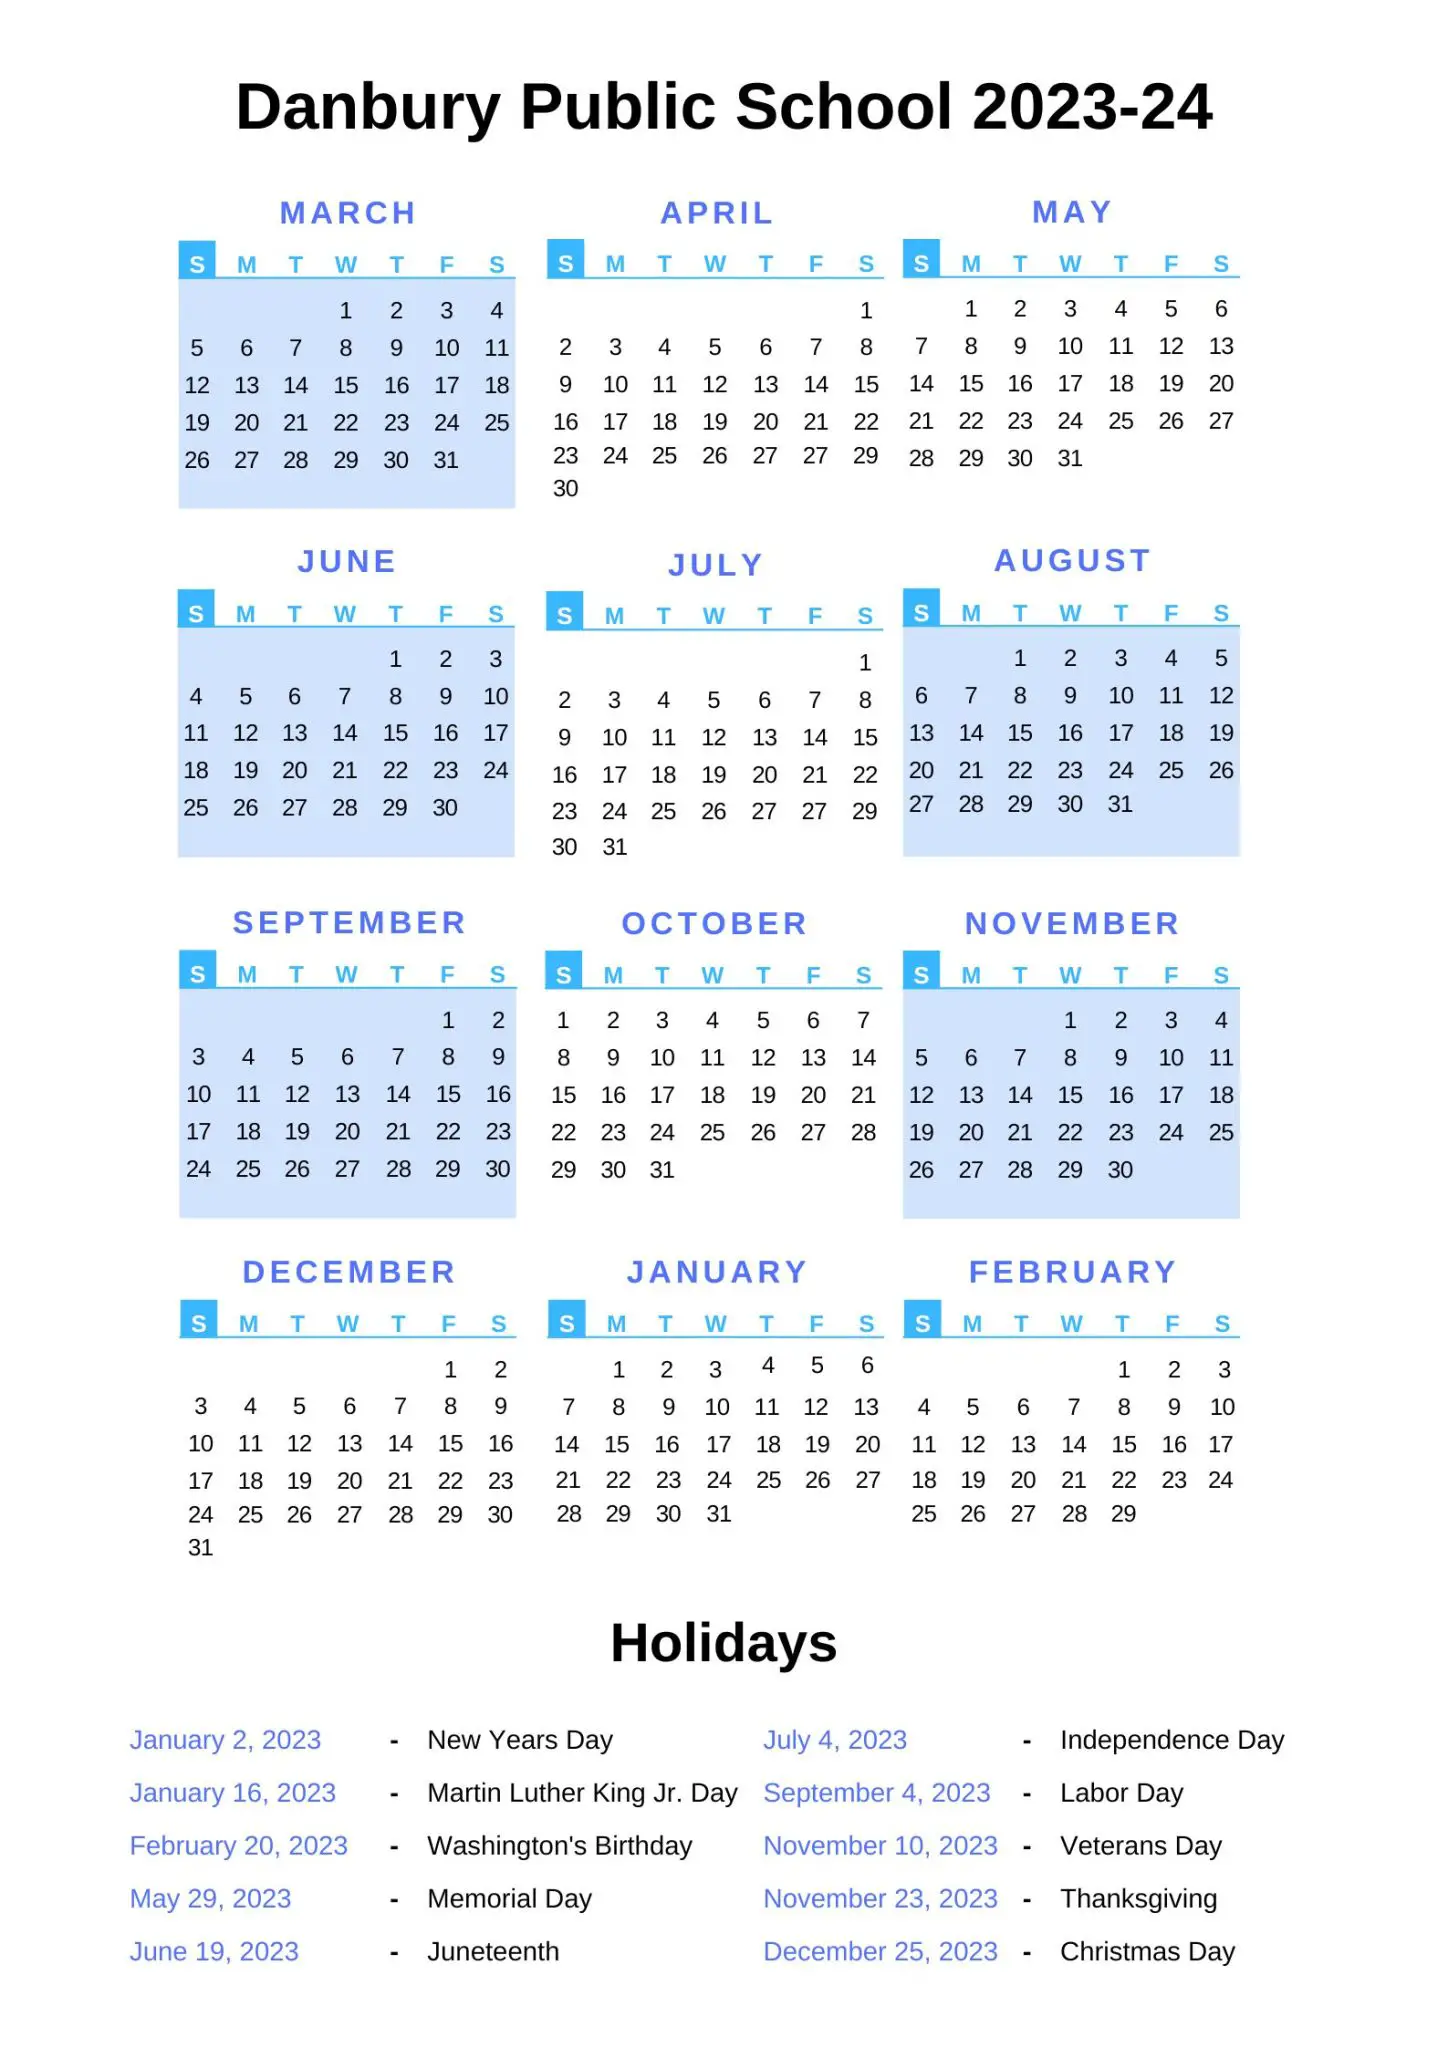 Danbury Public Schools Calendar [DPS] 202324 with Holidays